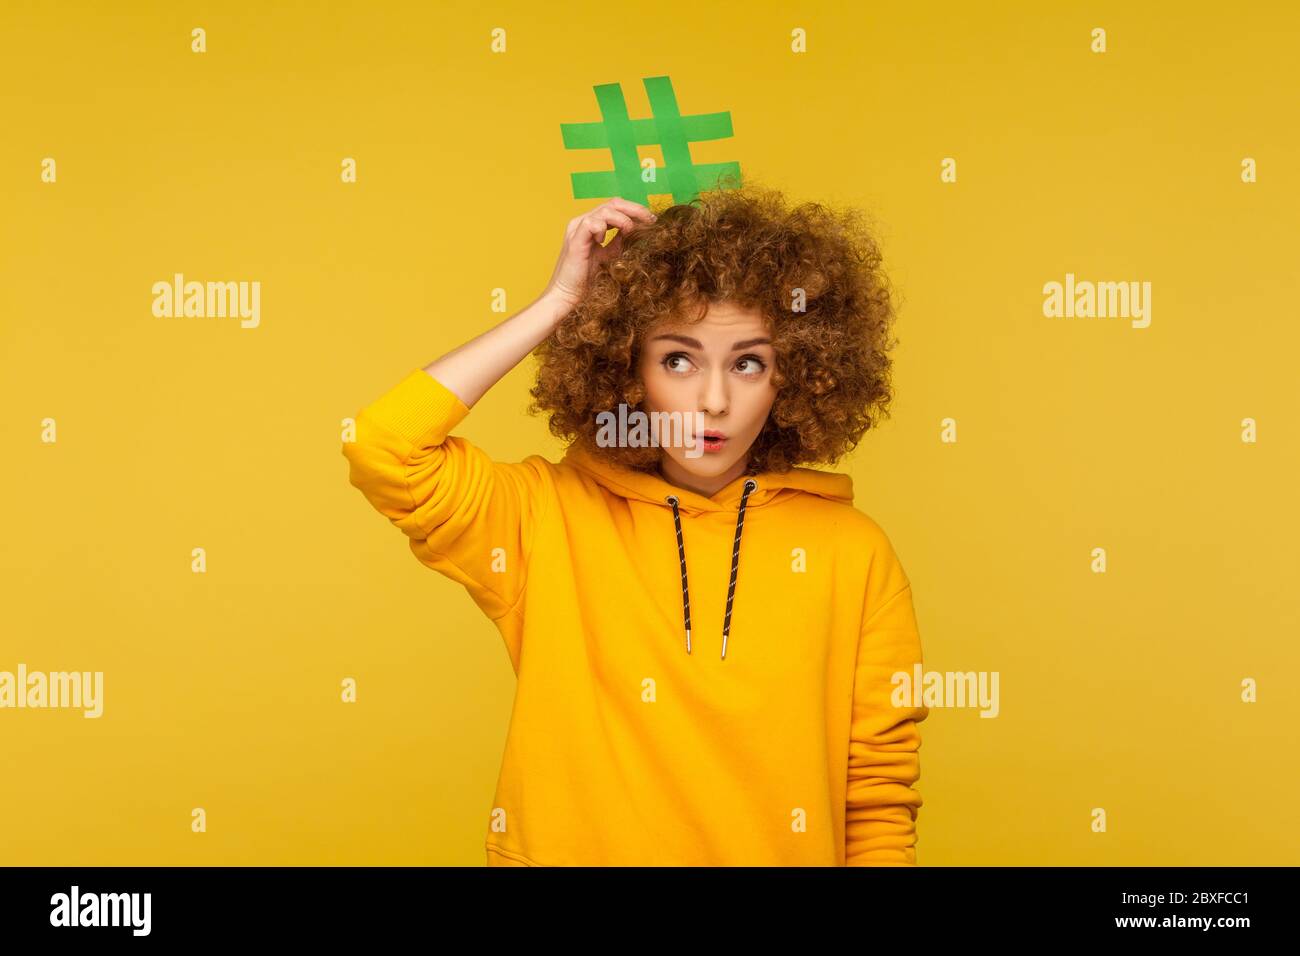 Beliebte Blog-Beiträge, trendige Inhalte. Porträt von überrascht lockig behaarte Frau im urbanen Stil Hoodie mit Hashtag Zeichen über Kopf, mit Amazem suchen Stockfoto